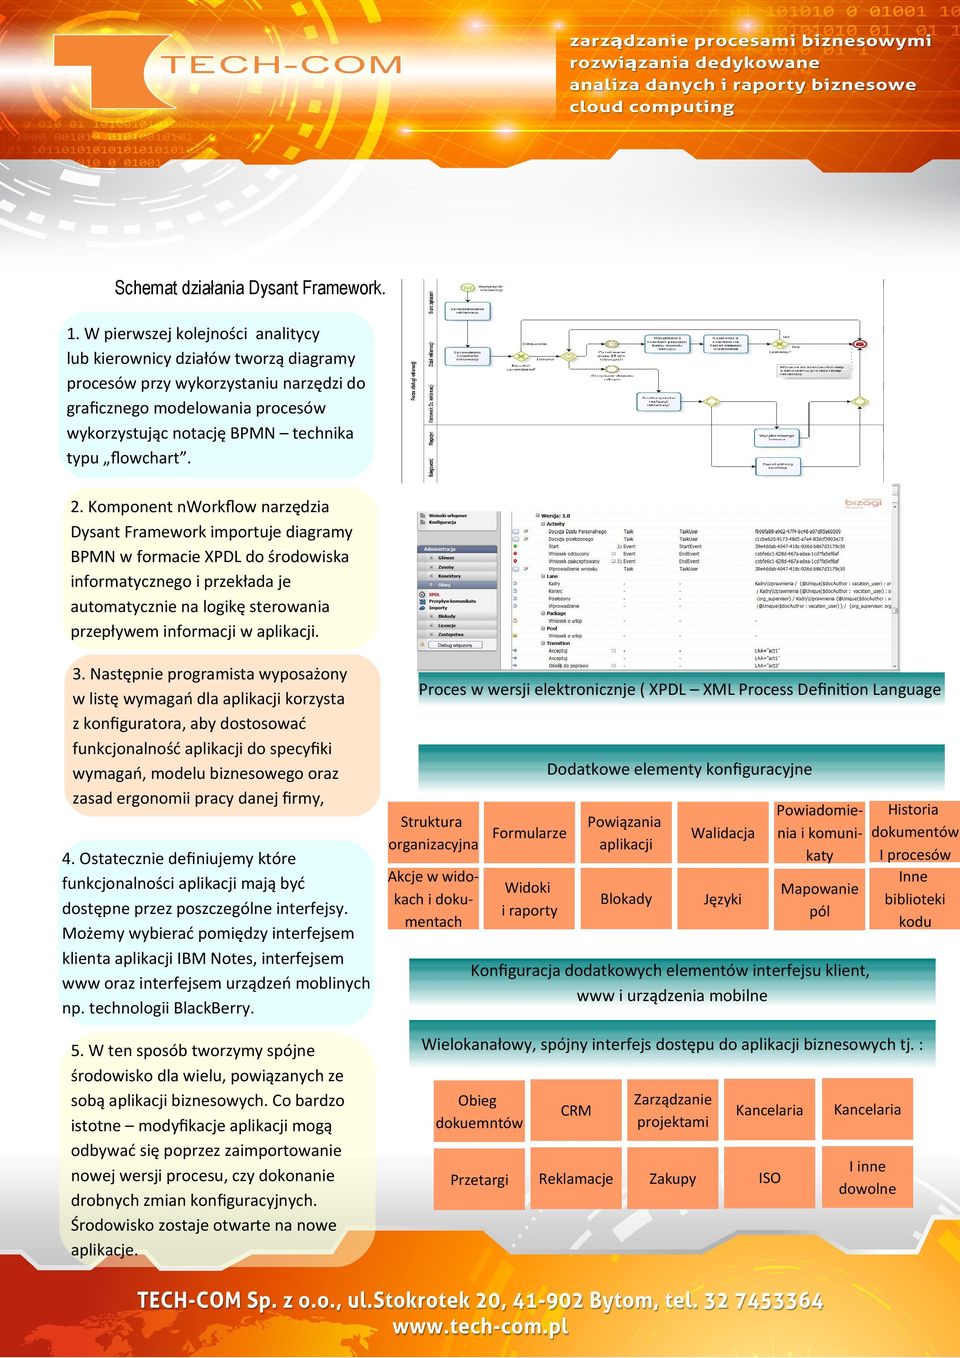 Komponent nworkflow narzędzia Dysant Framework importuje diagramy BPMN w formacie XPDL do środowiska informatycznego i przekłada je automatycznie na logikę sterowania przepływem informacji w